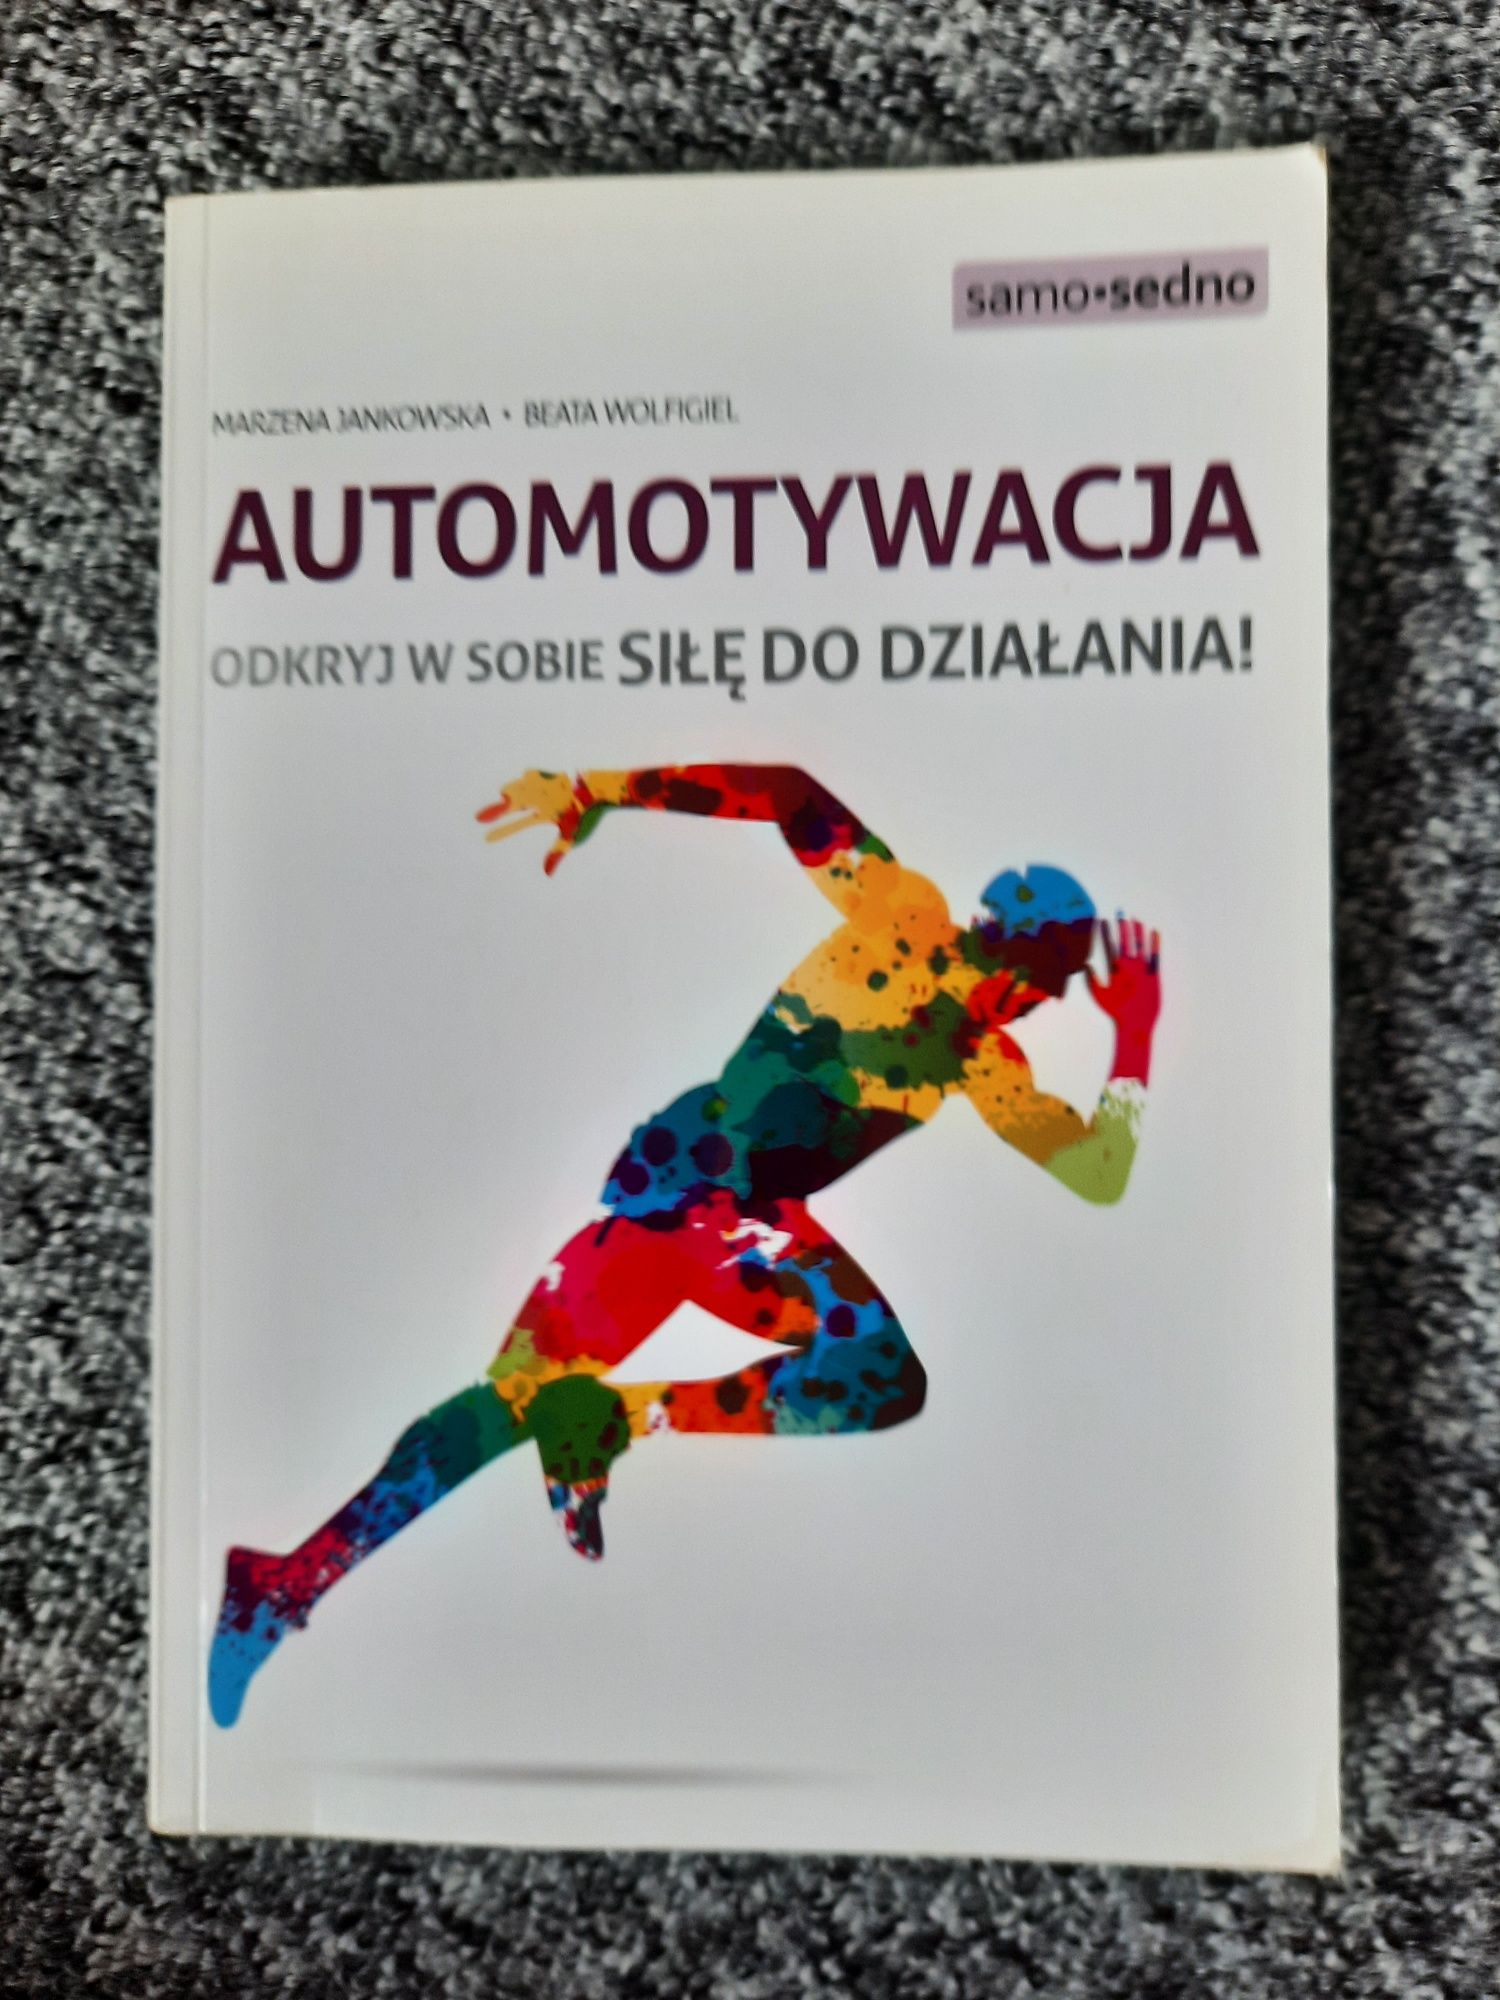 Książka Automotywacja Marzena Jankowska odkryj w sobie siłę do dzialan